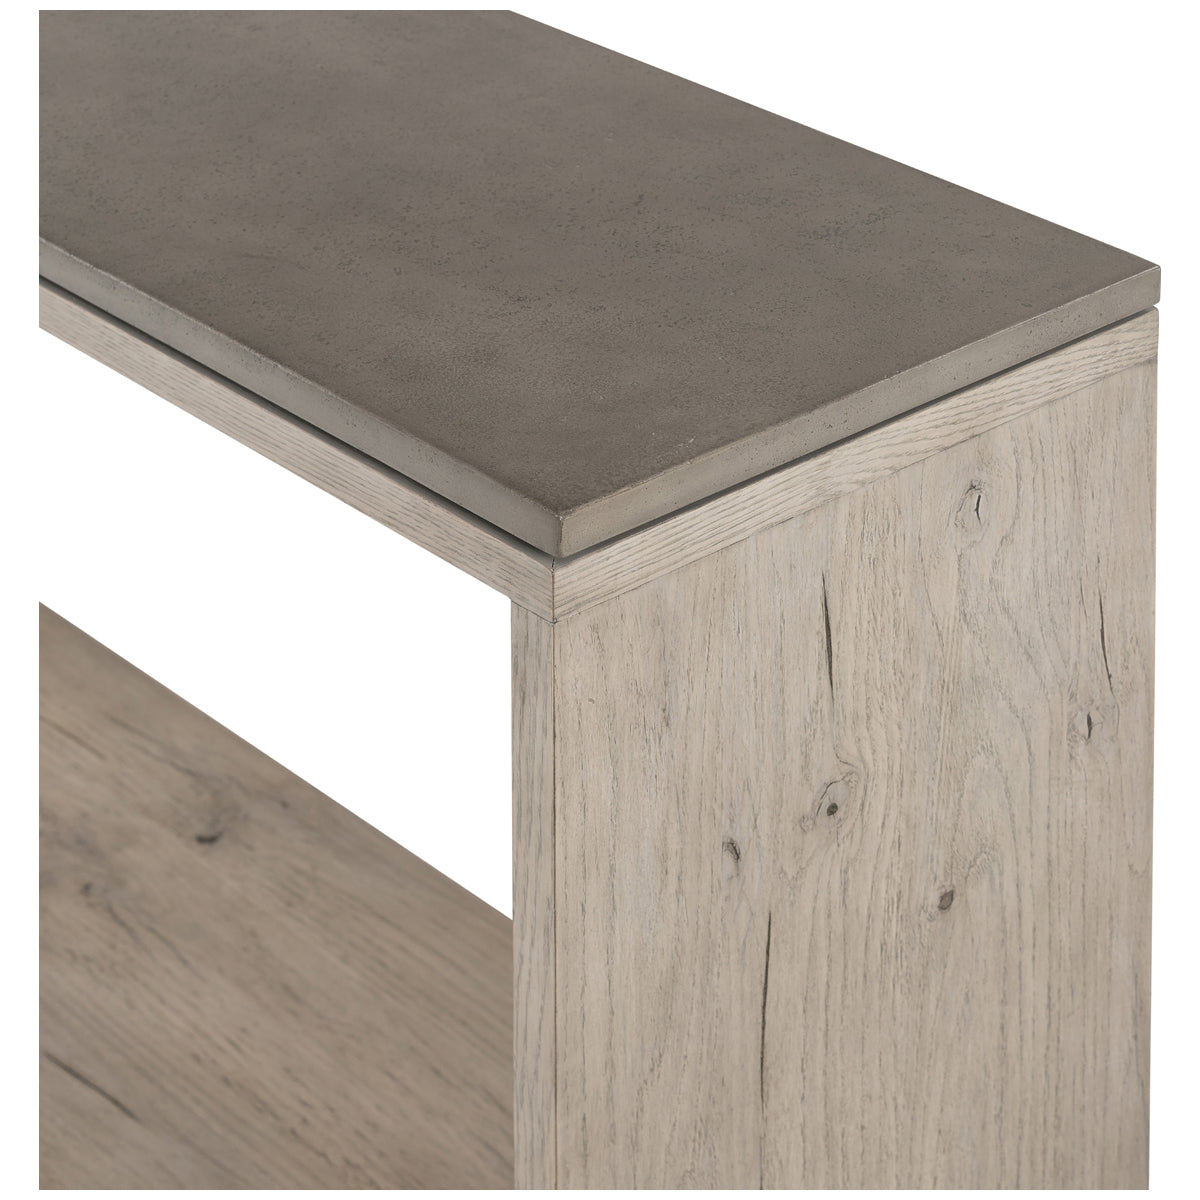 Four Hands Bina Faro Console Table - Dark Grey Concrete